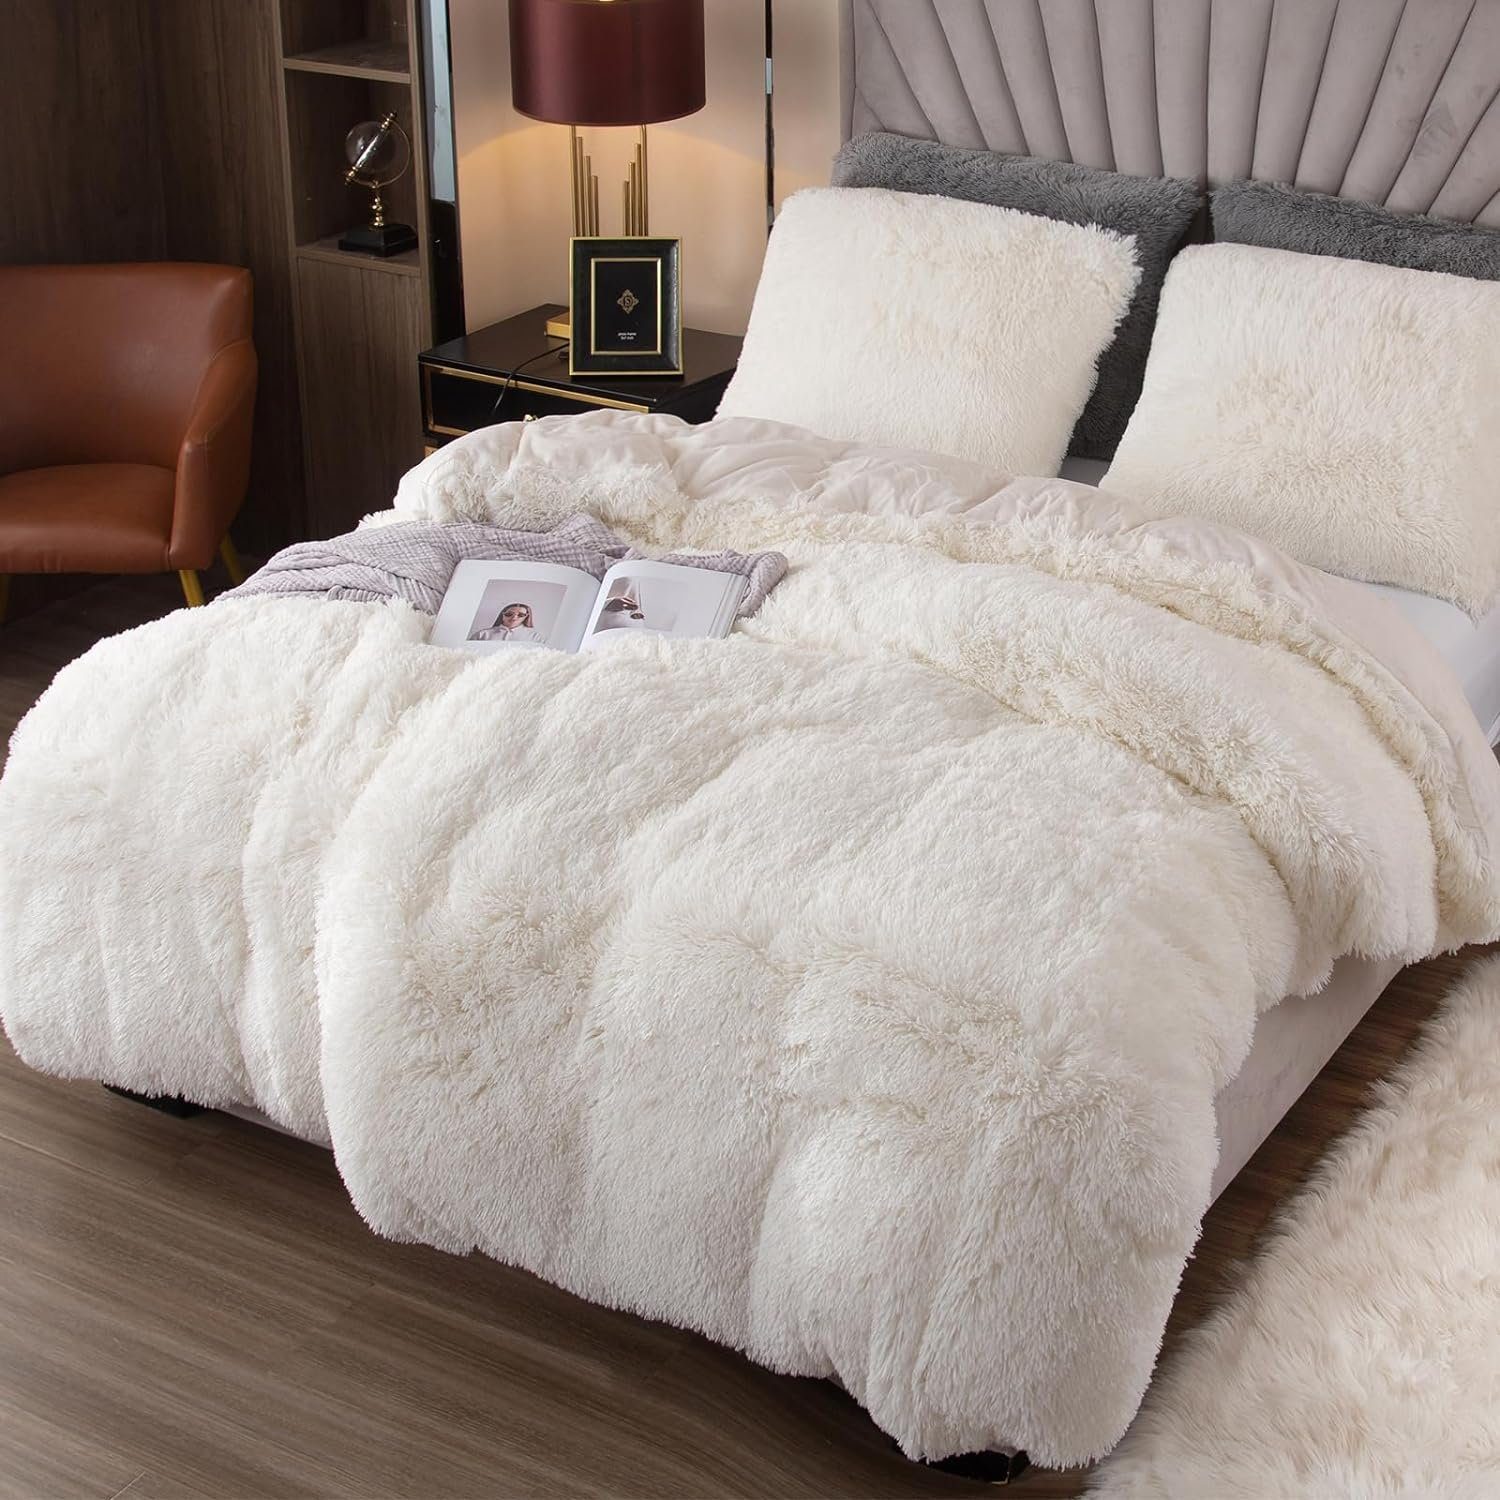 Bettwäsche Plüsch Mutoy, Deckenbezug Bettbezug, 80x80 Flanell Felloptik,Warme flauschige Reißverschluss Bettwäsche,Extra Kissenbezug mit Weiß und